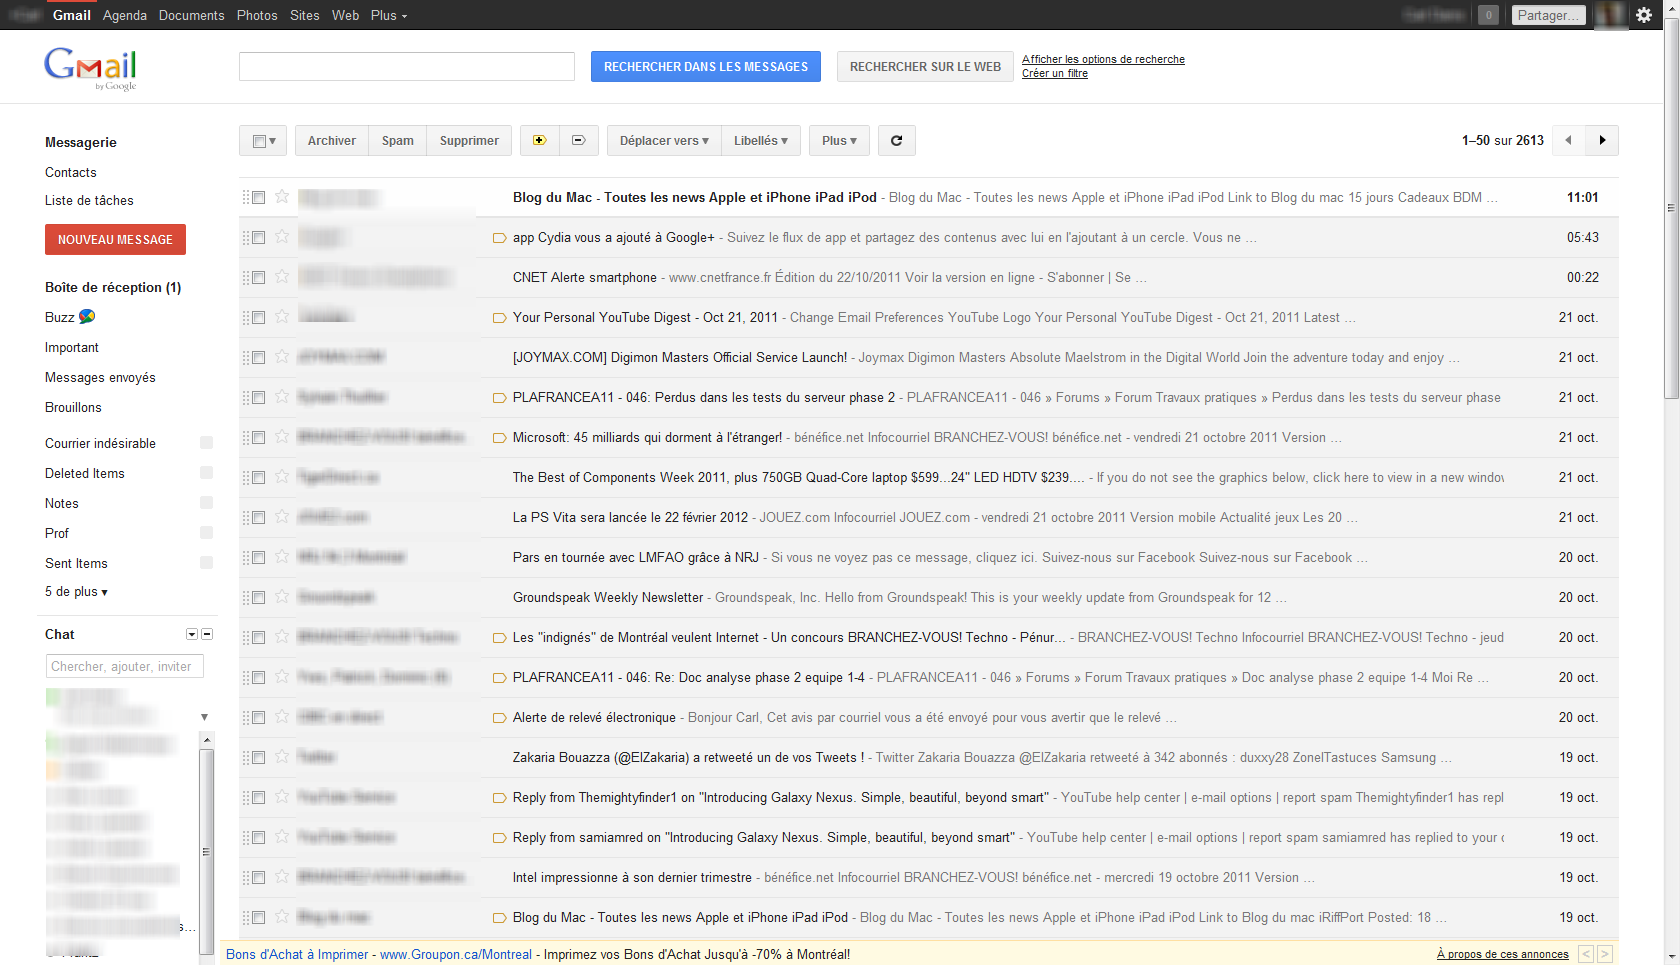 Un nouveau look pour Gmail ?